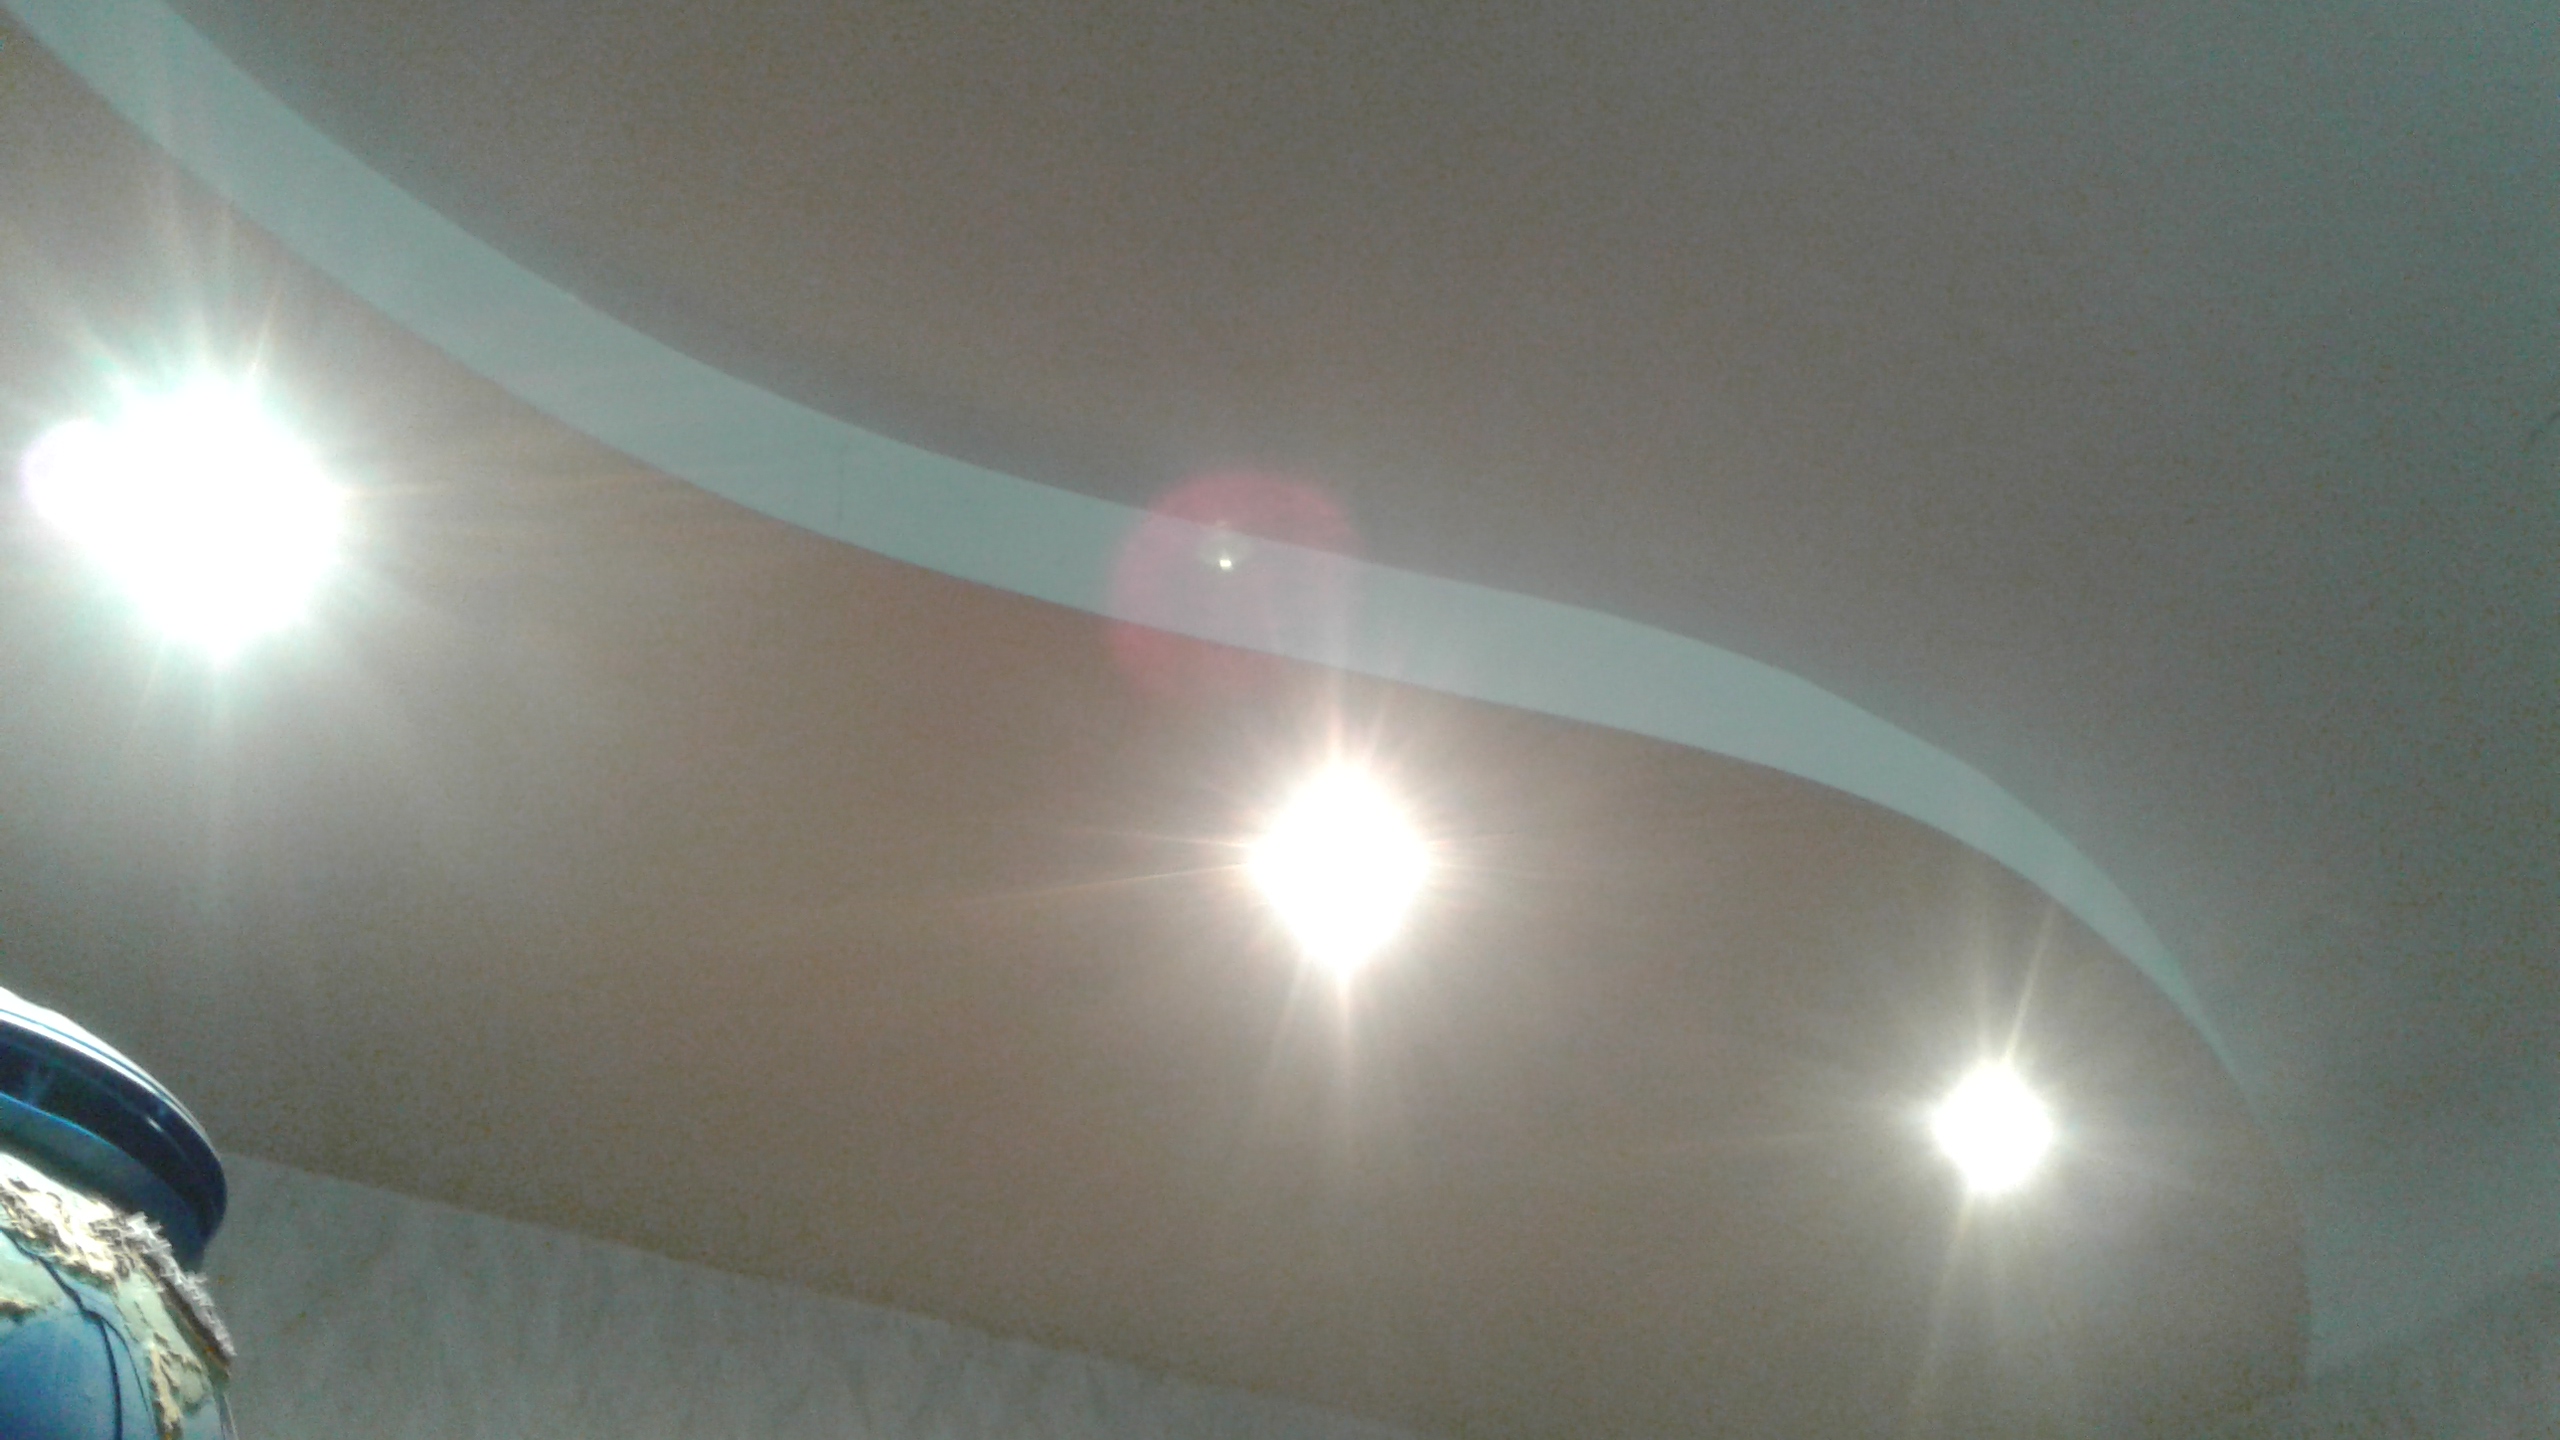 пример установки светильников в натяжной потолок